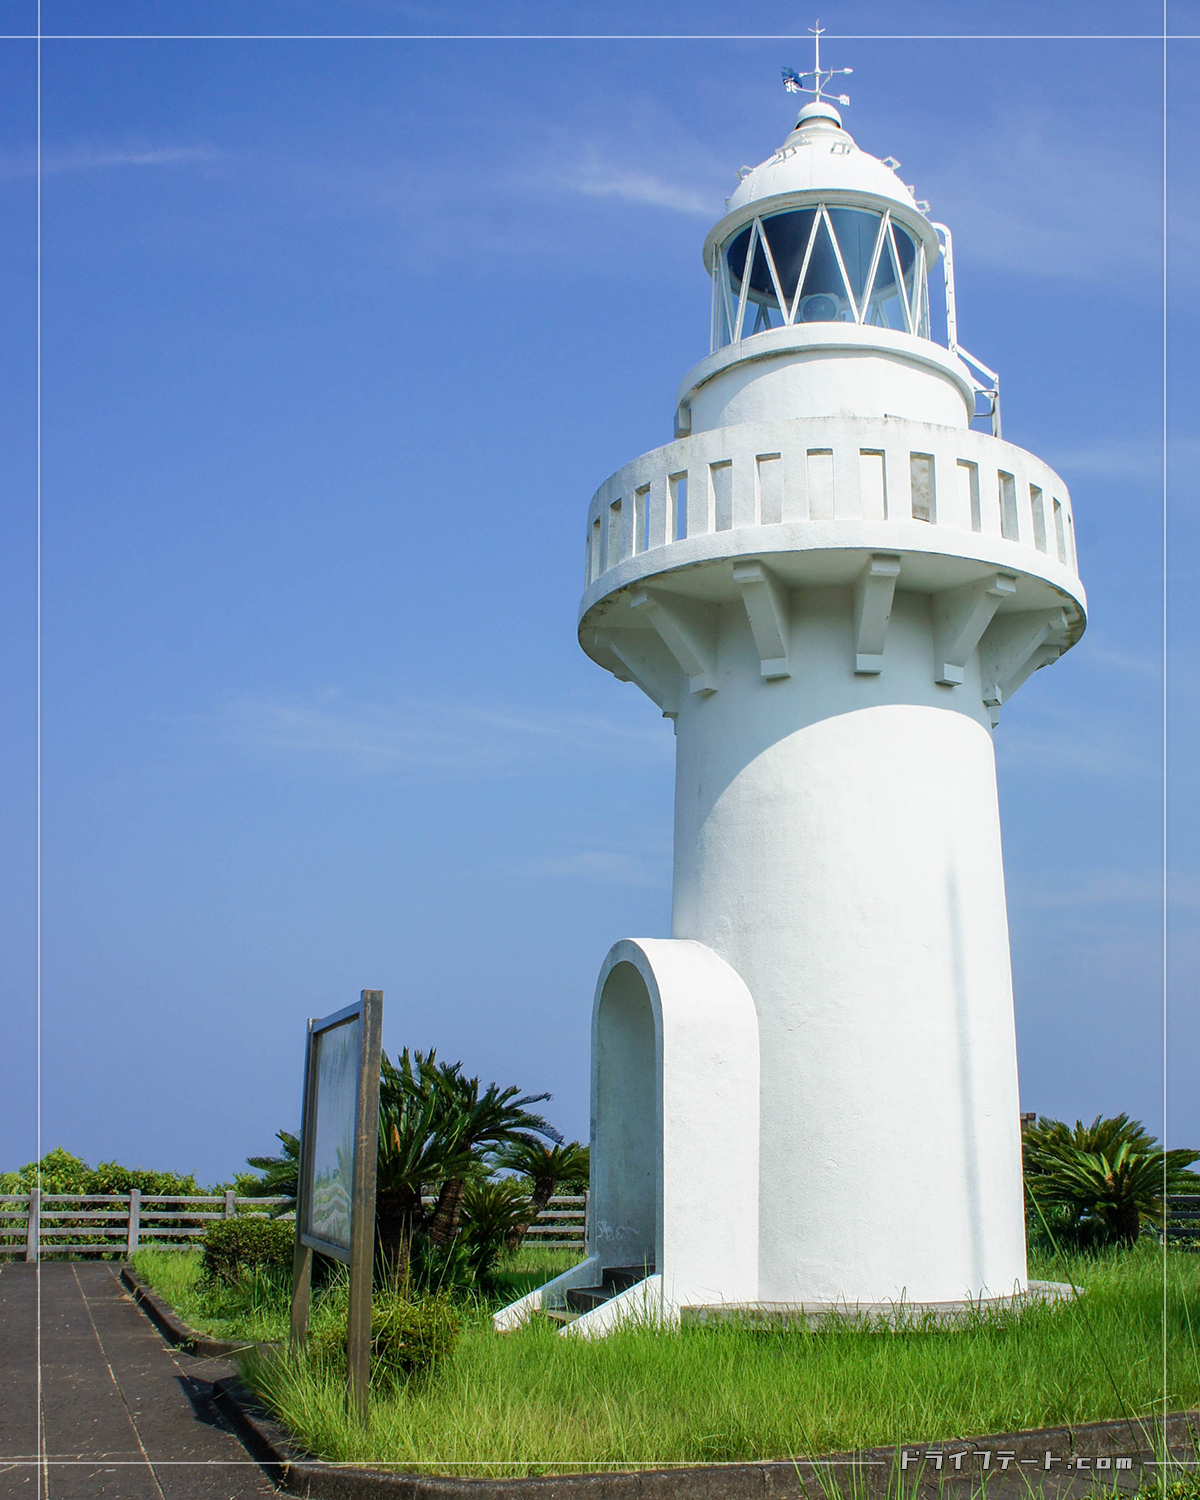 細島灯台は半円アーチ形に突出する出入口とバルコニーを支える持ち送りのデザインが特徴的な白い灯台